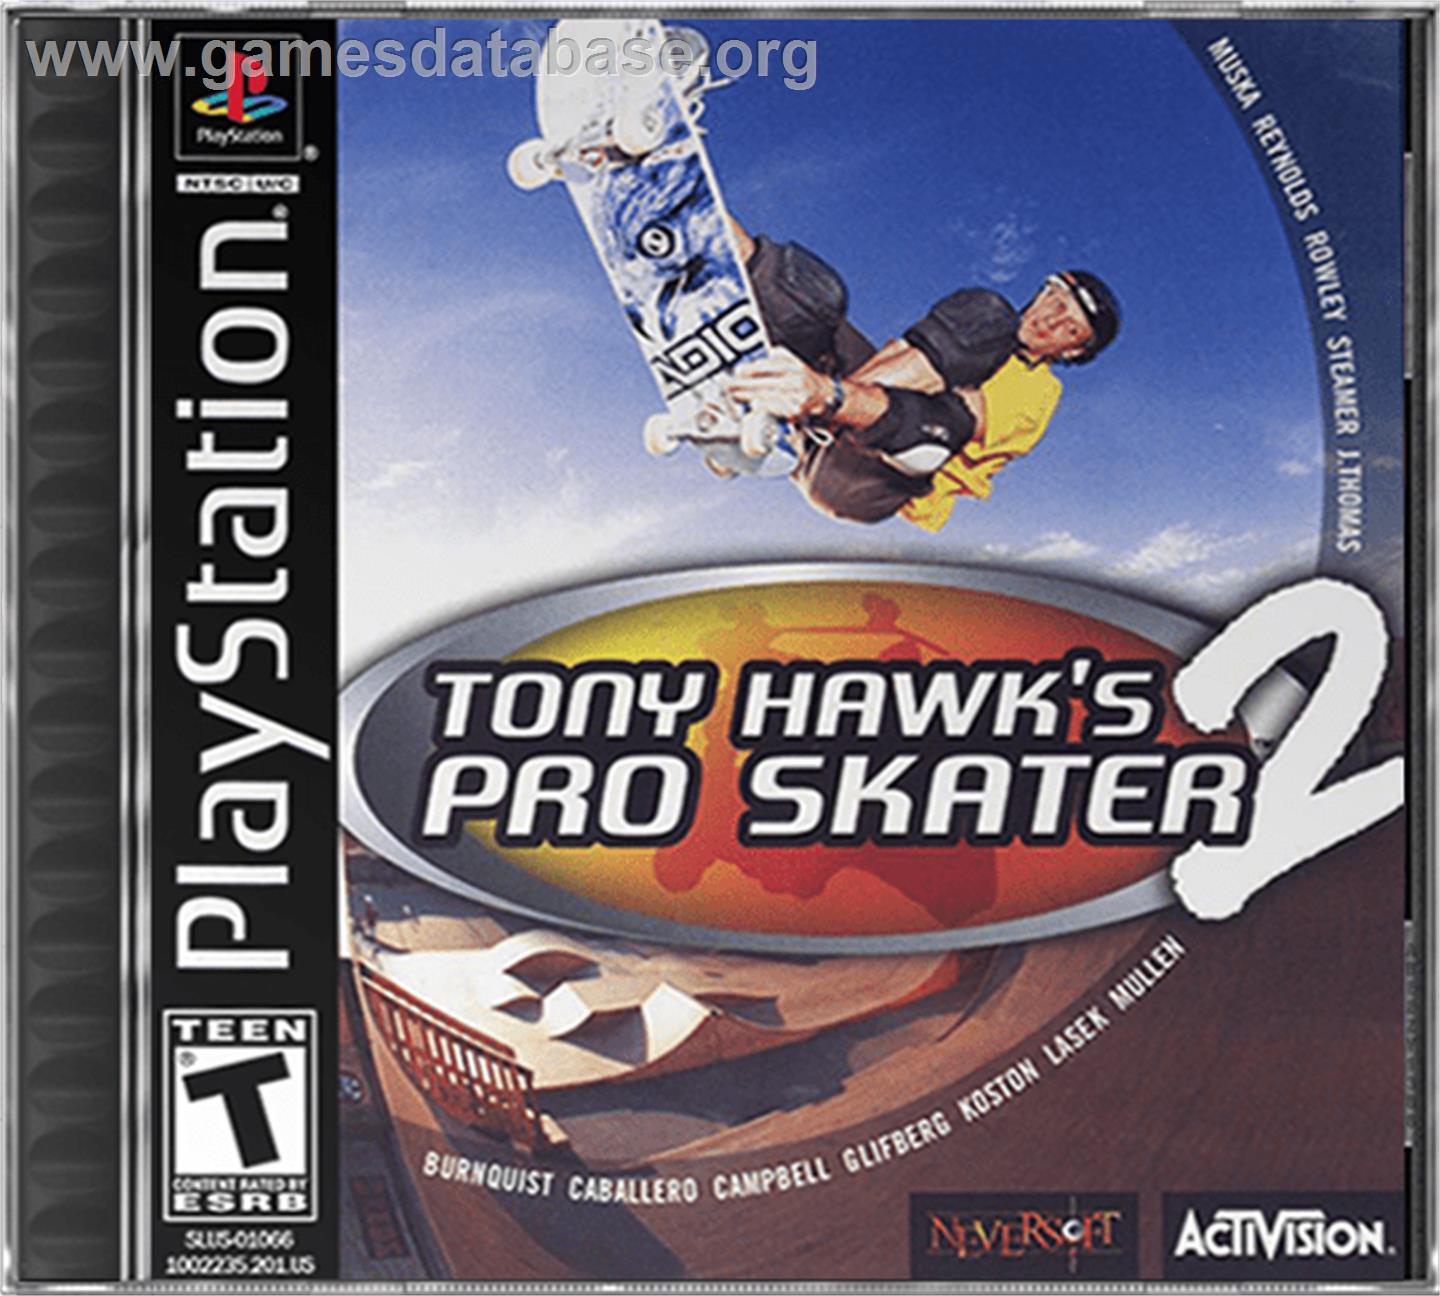 Tony Hawk's Pro Skater 2 - Sony Playstation - Artwork - Box